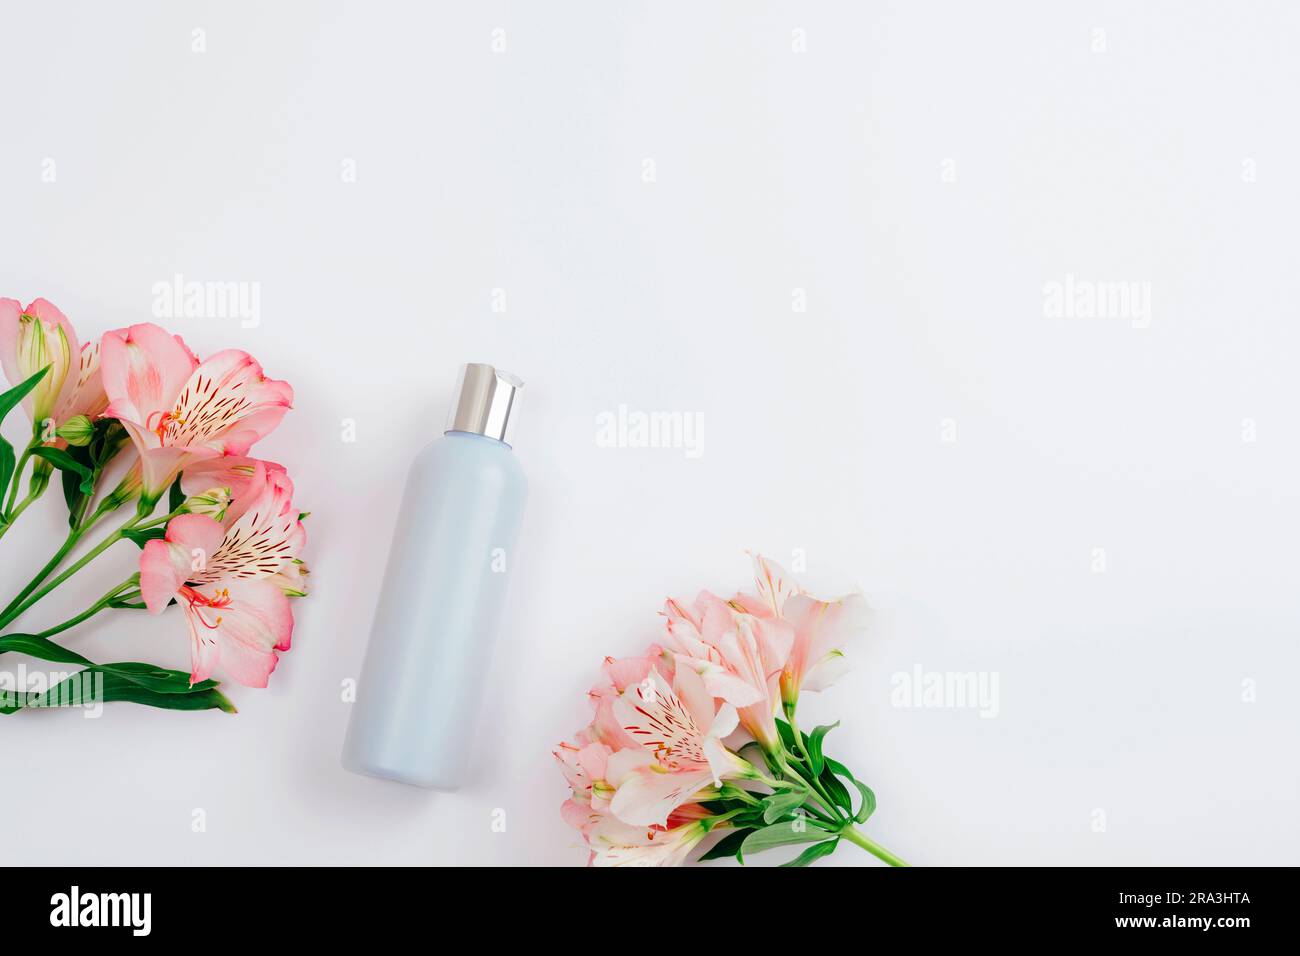 Blaue Kosmetikflasche und Alstroemeria Rosa Blumen auf weißem Hintergrund, flach liegend, Draufsicht. Leeres Label für Branding, Modell. Natürlicher ökologischer Kosmos Stockfoto